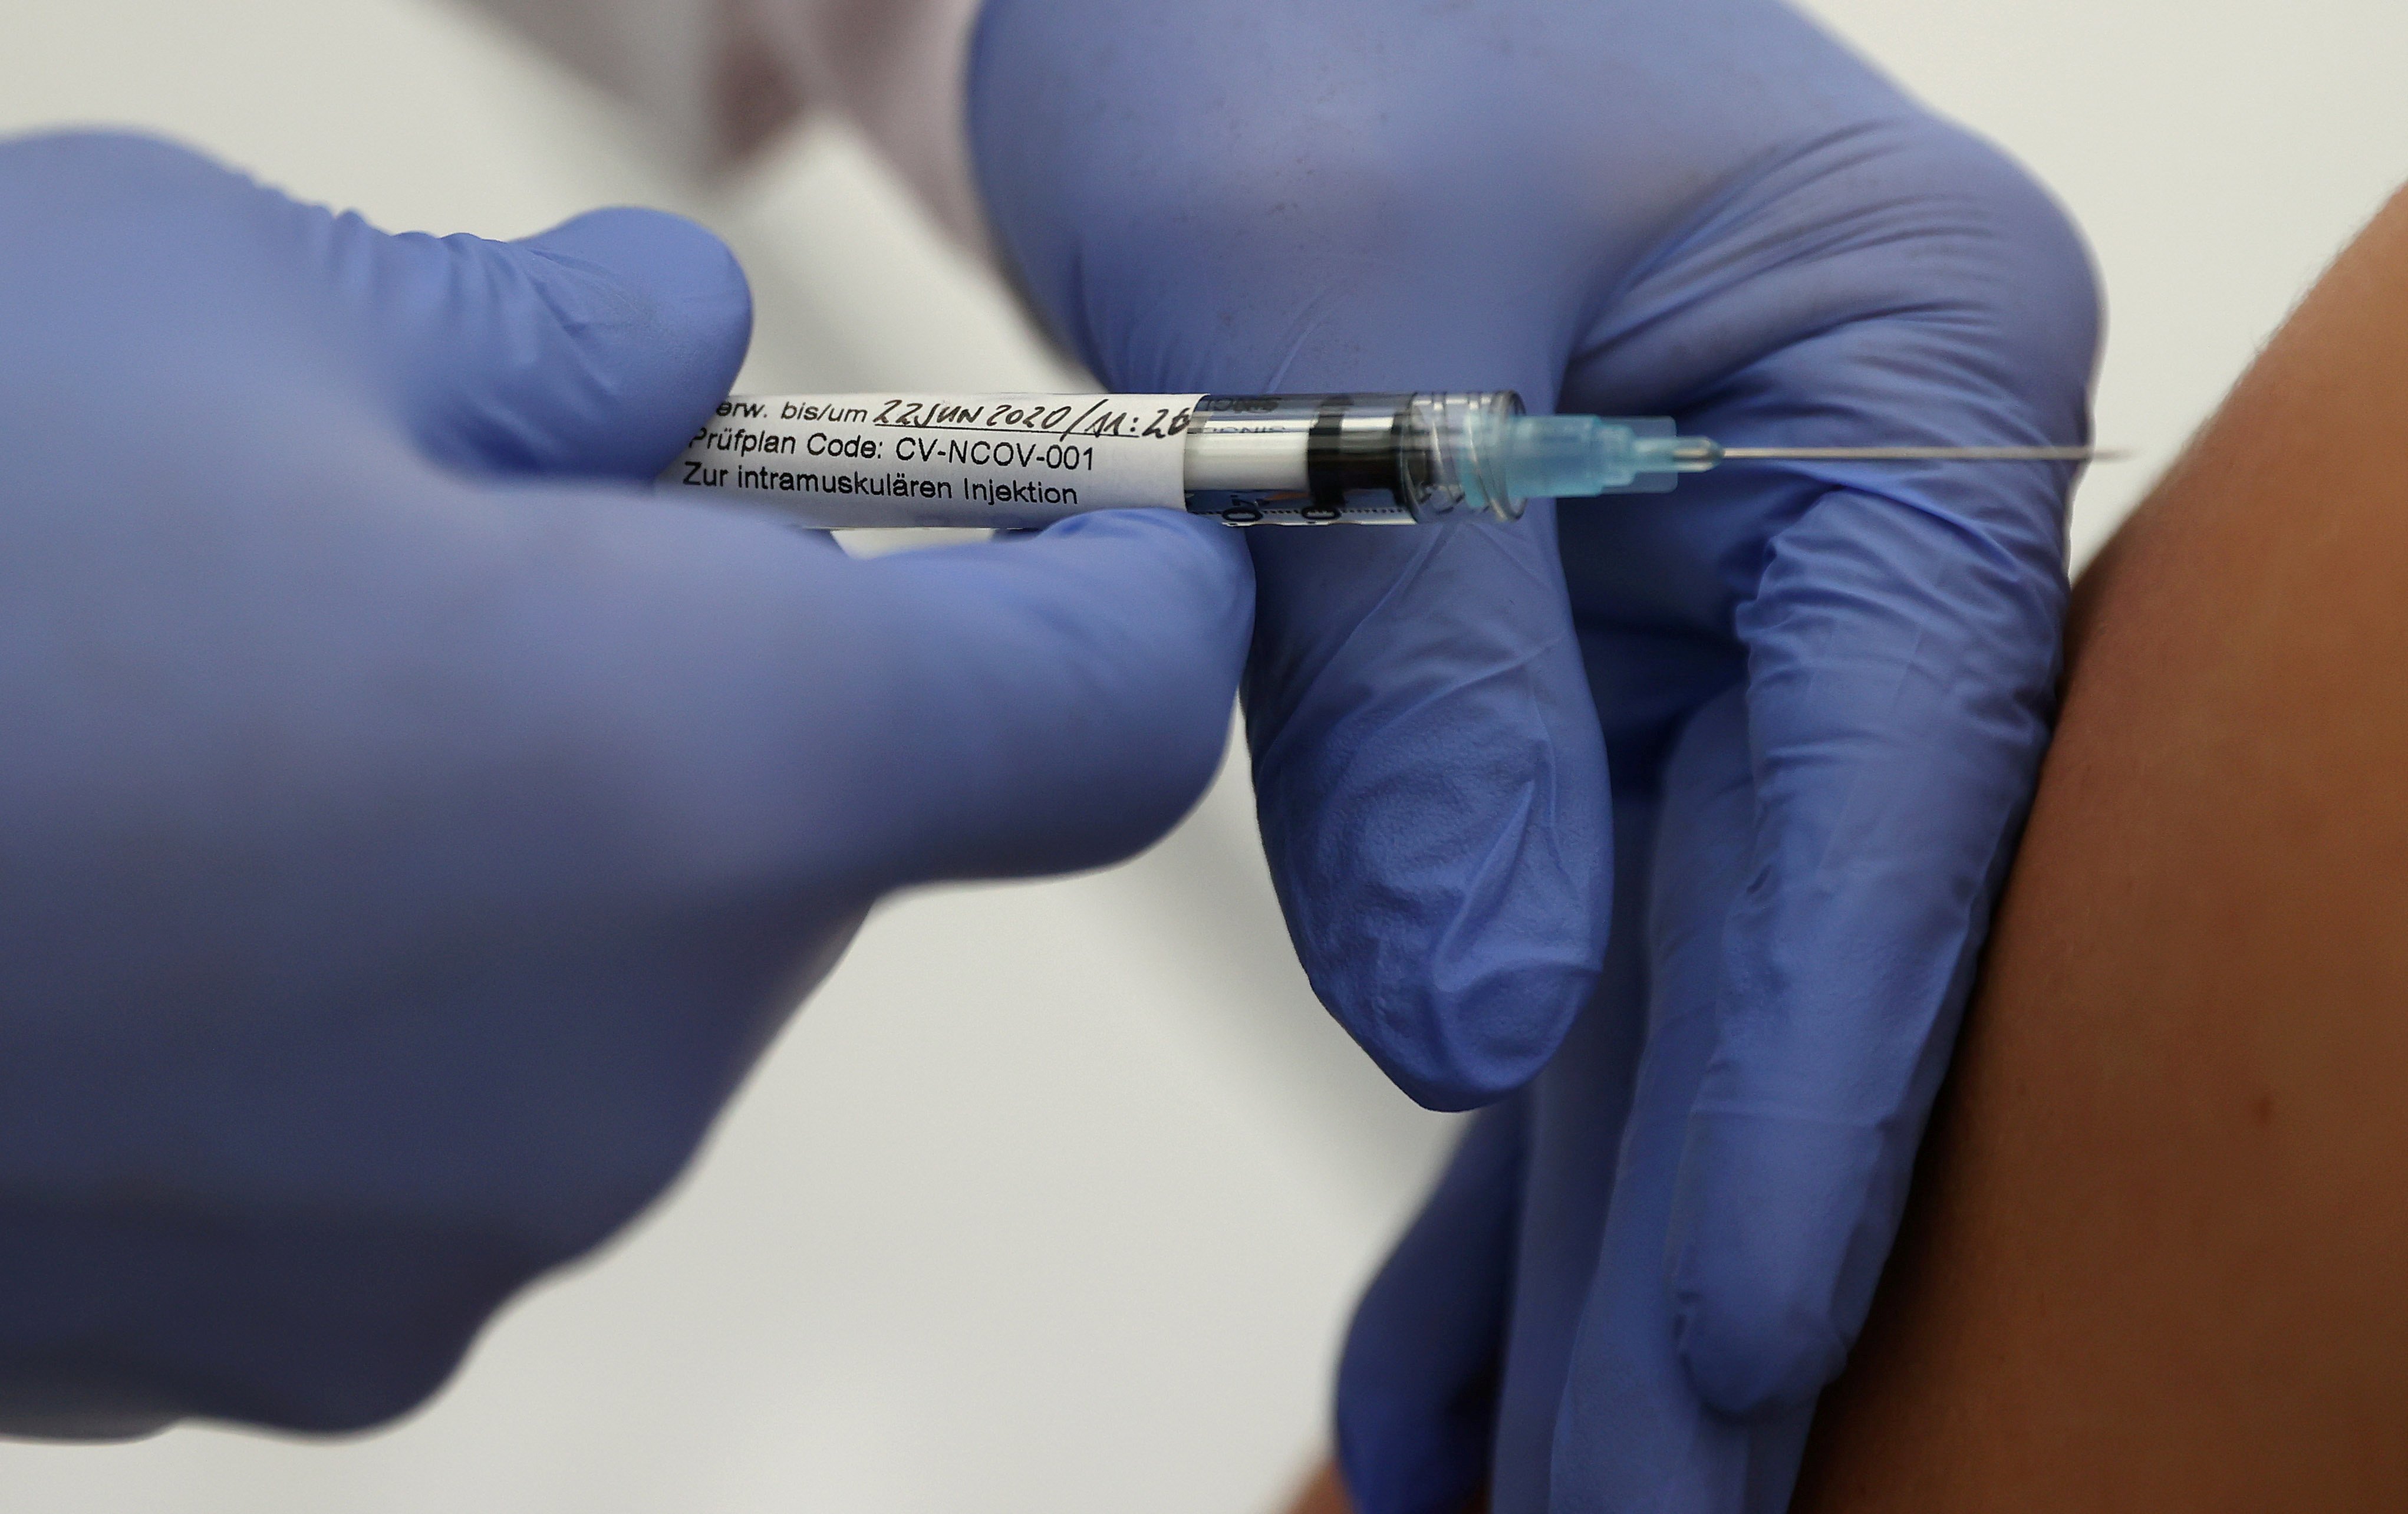 Europa empieza a estudiar la vacuna de CureVac contra la Covid